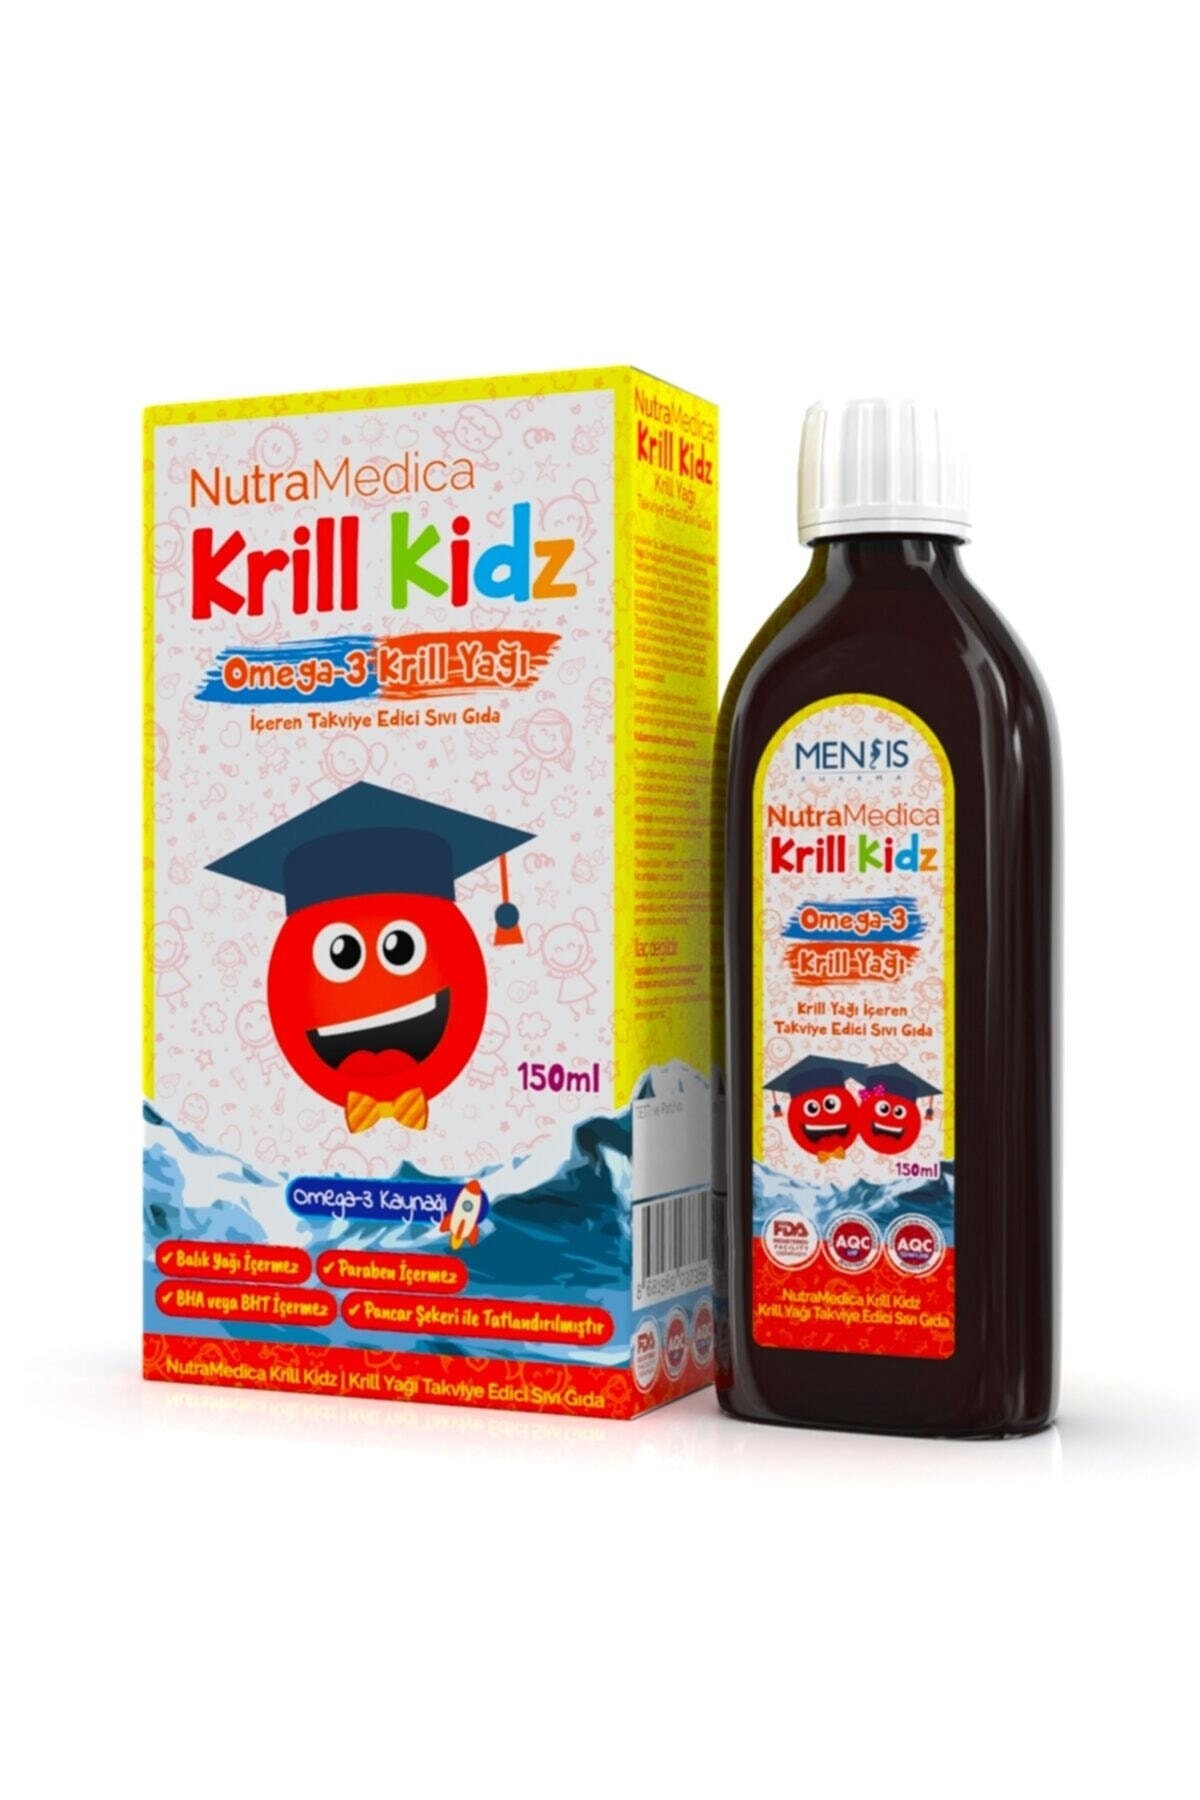 Mensis Pharma Nutramedica Krill Kidz Omega-3 150 ml Şurup Krill Yağı Içeren Takviye Edici Sıvı Gıda